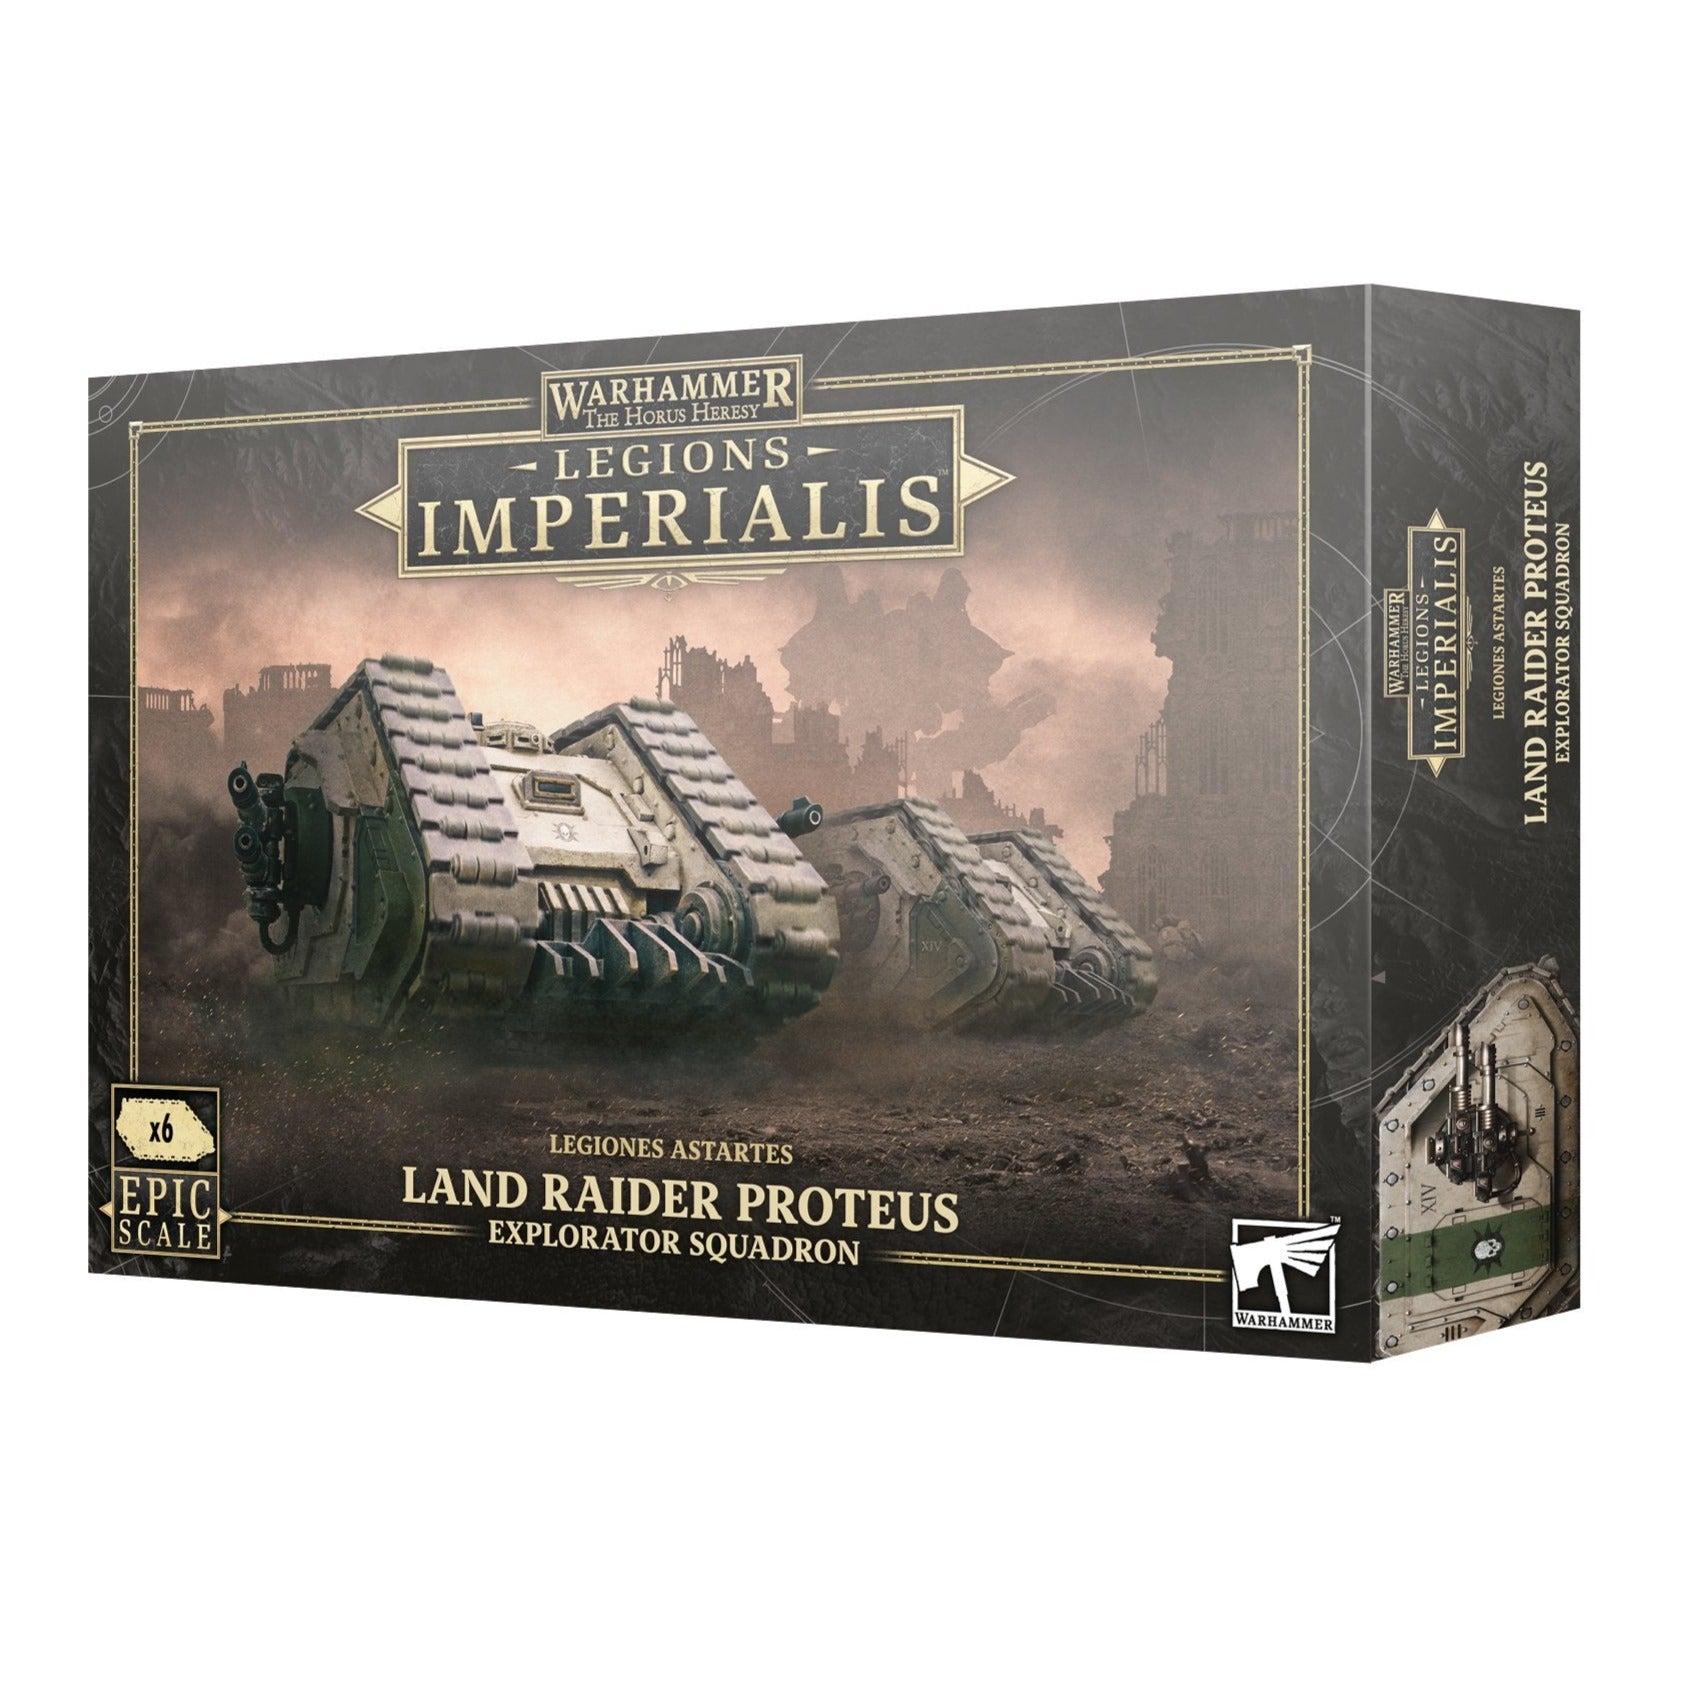 Legions Imperialis: Land Raider Proteus Explorator Squadron - Release Date 13/4/24 - Loaded Dice